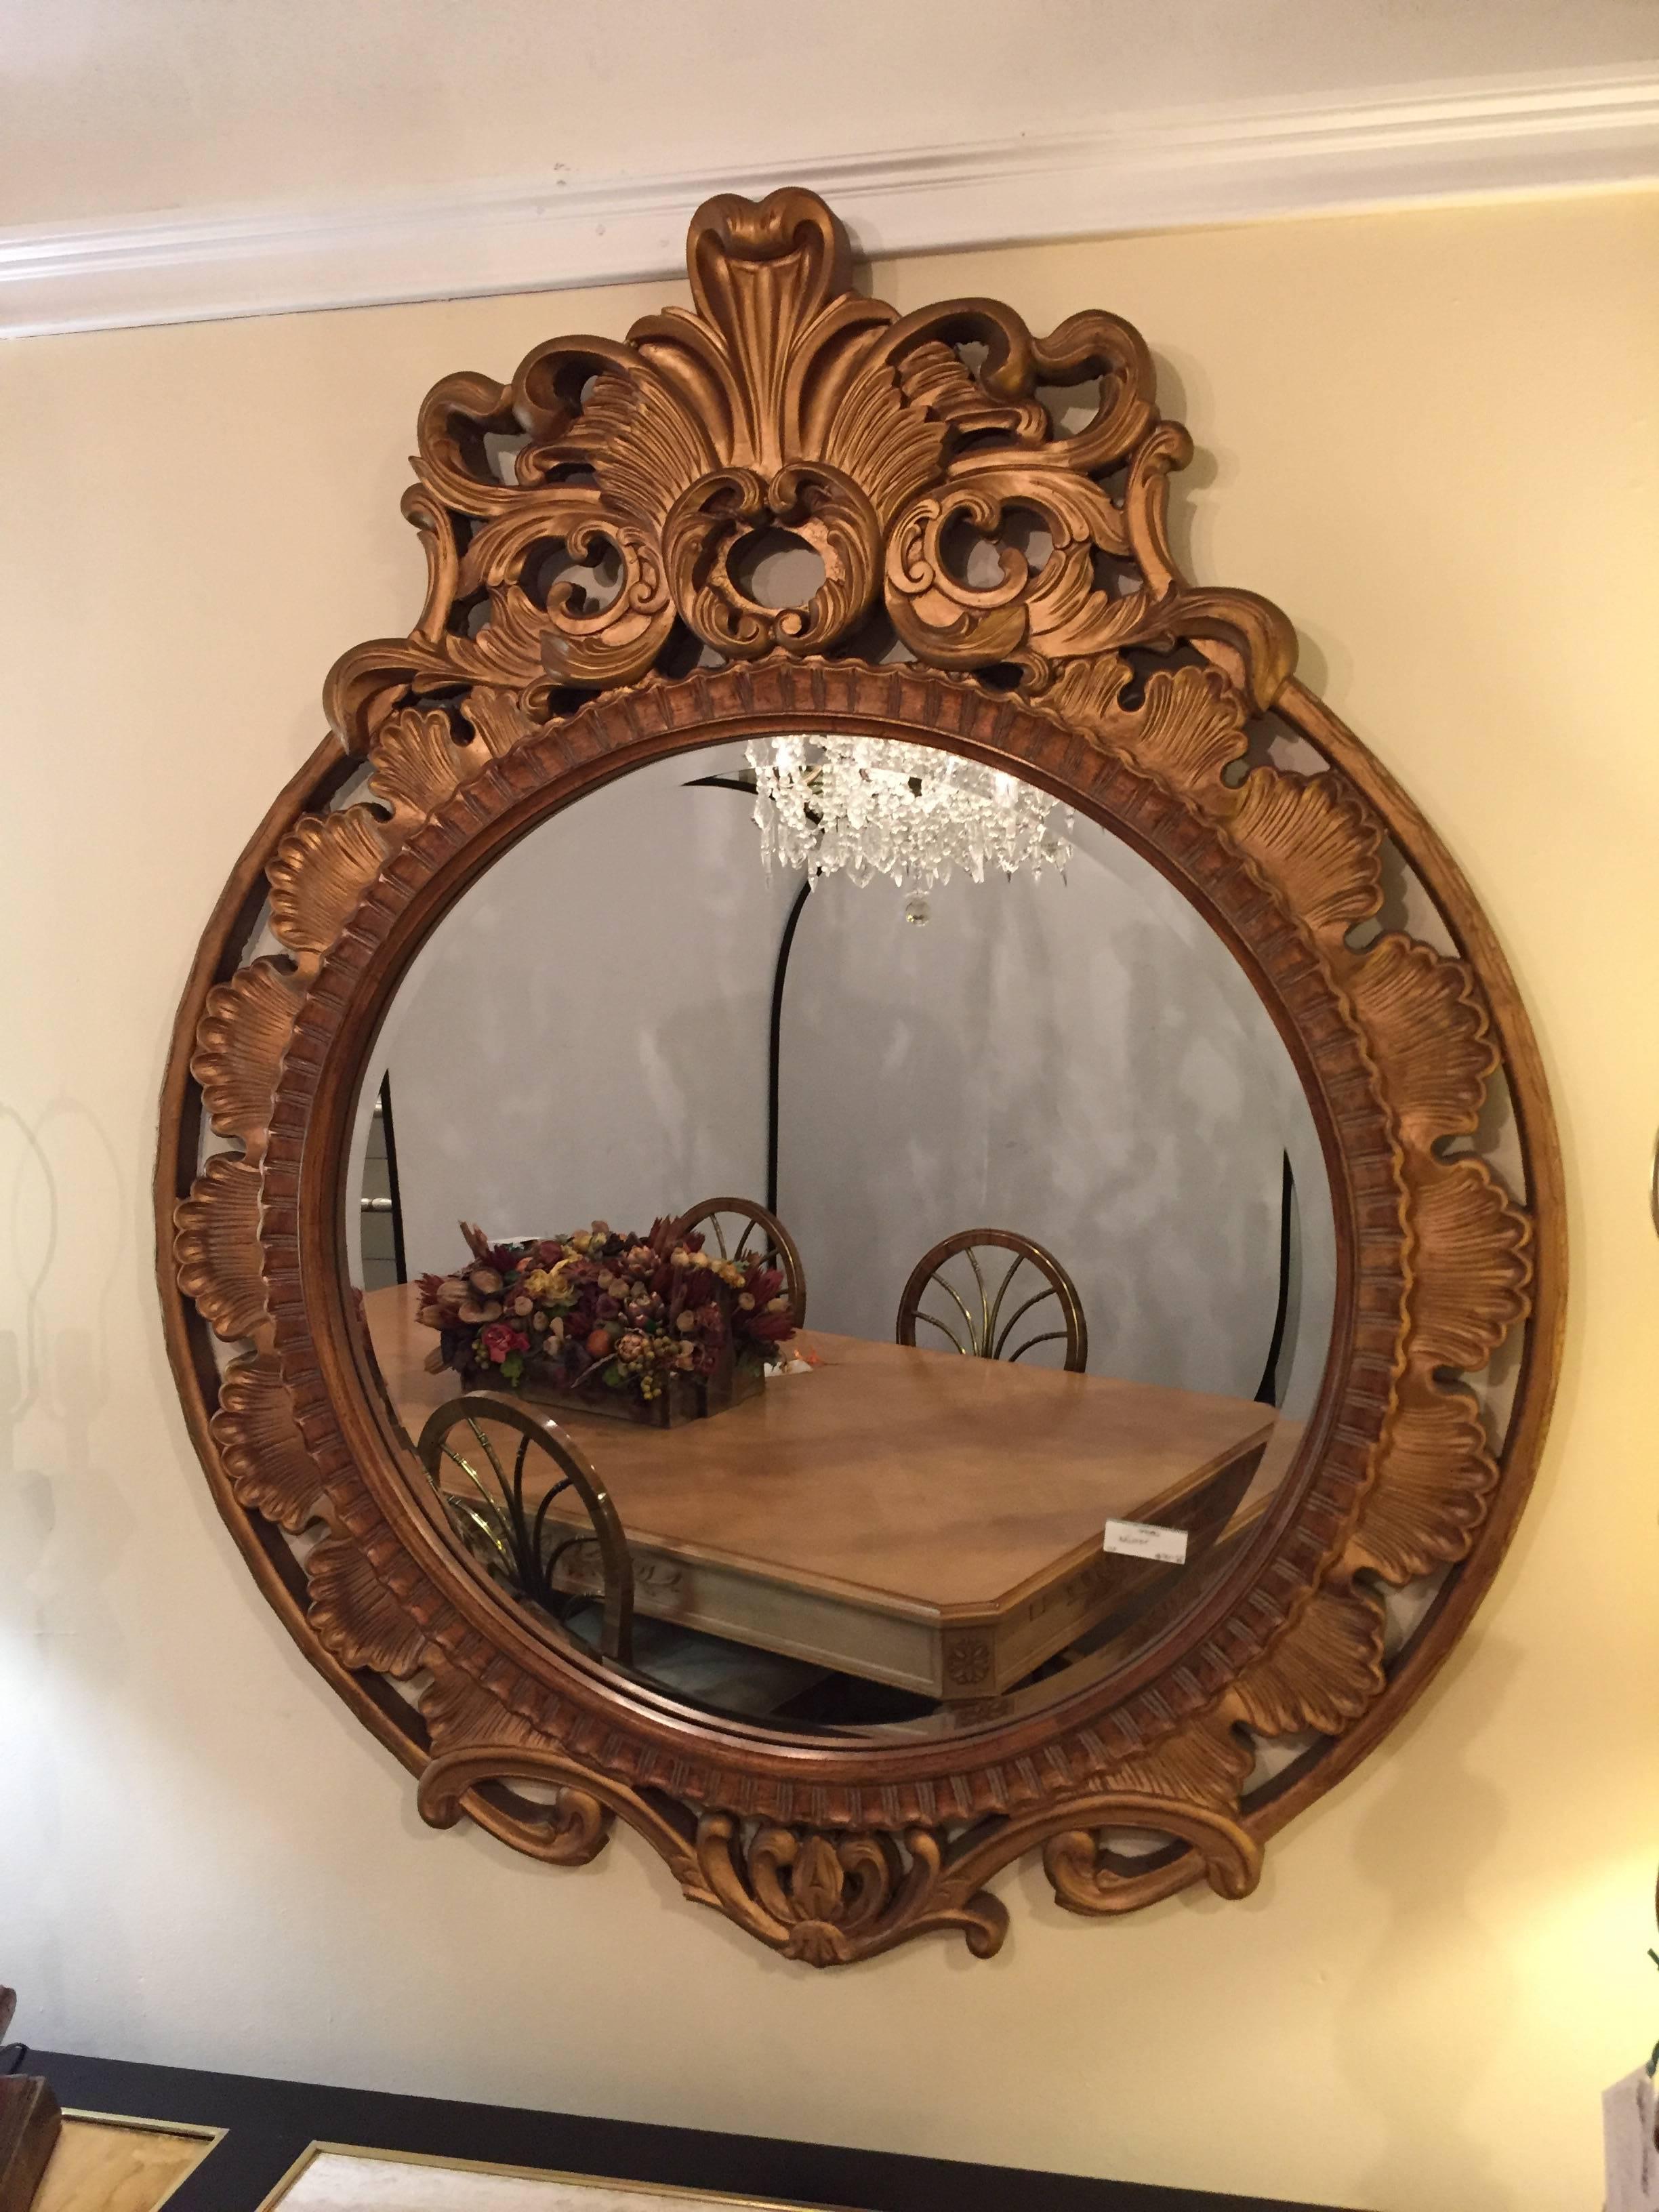 Palatial miroir mural ou console circulaire sculpté et décoré de dorures. Le miroir circulaire central, clair et net, est encadré dans un cadre en bois doré fortement sculpté. Le cadre intérieur en forme de coquille s'écoule sur un cadre extérieur